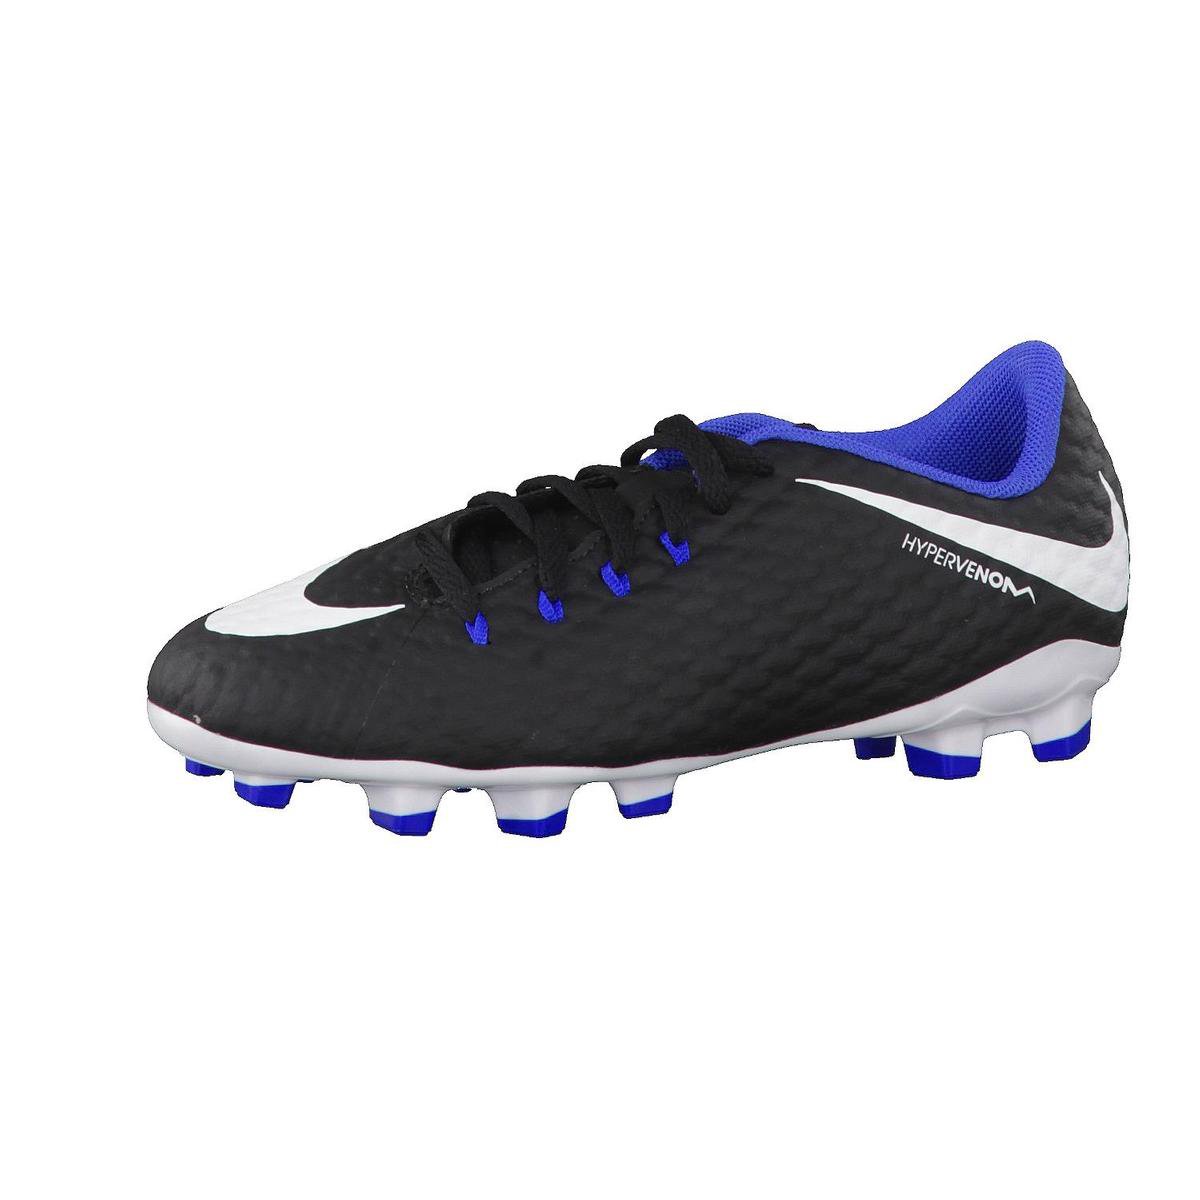 Nike Hypervenom Phelon III FG Voetbalschoenen - Maat 35 - Unisex -  zwart/wit/blauw | bol